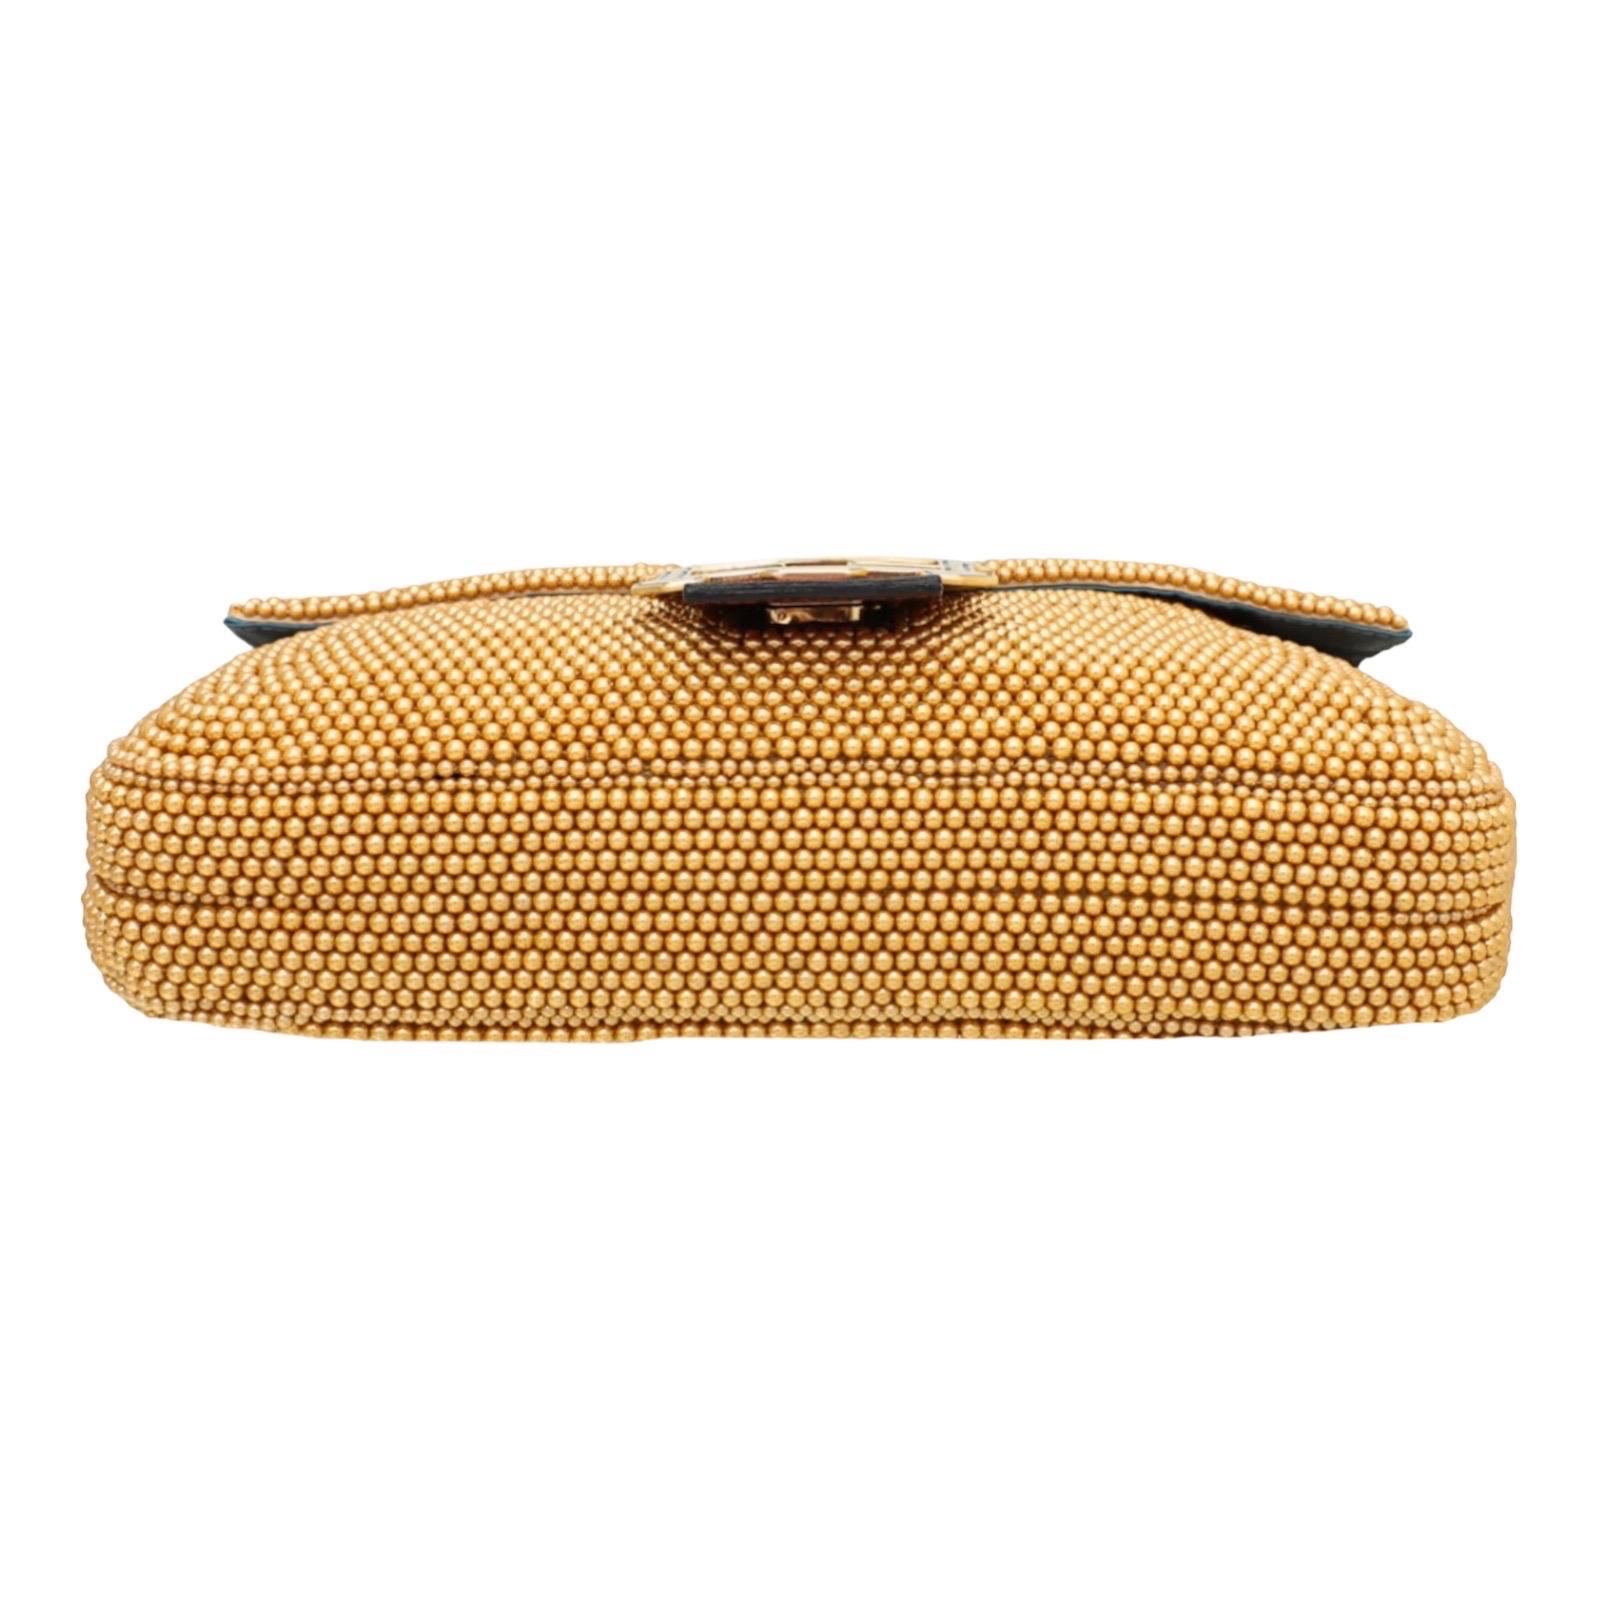 UNWORN Fendi Embroidered Golden Baguette Handbag Flap Bag Clutch - Full Set 8